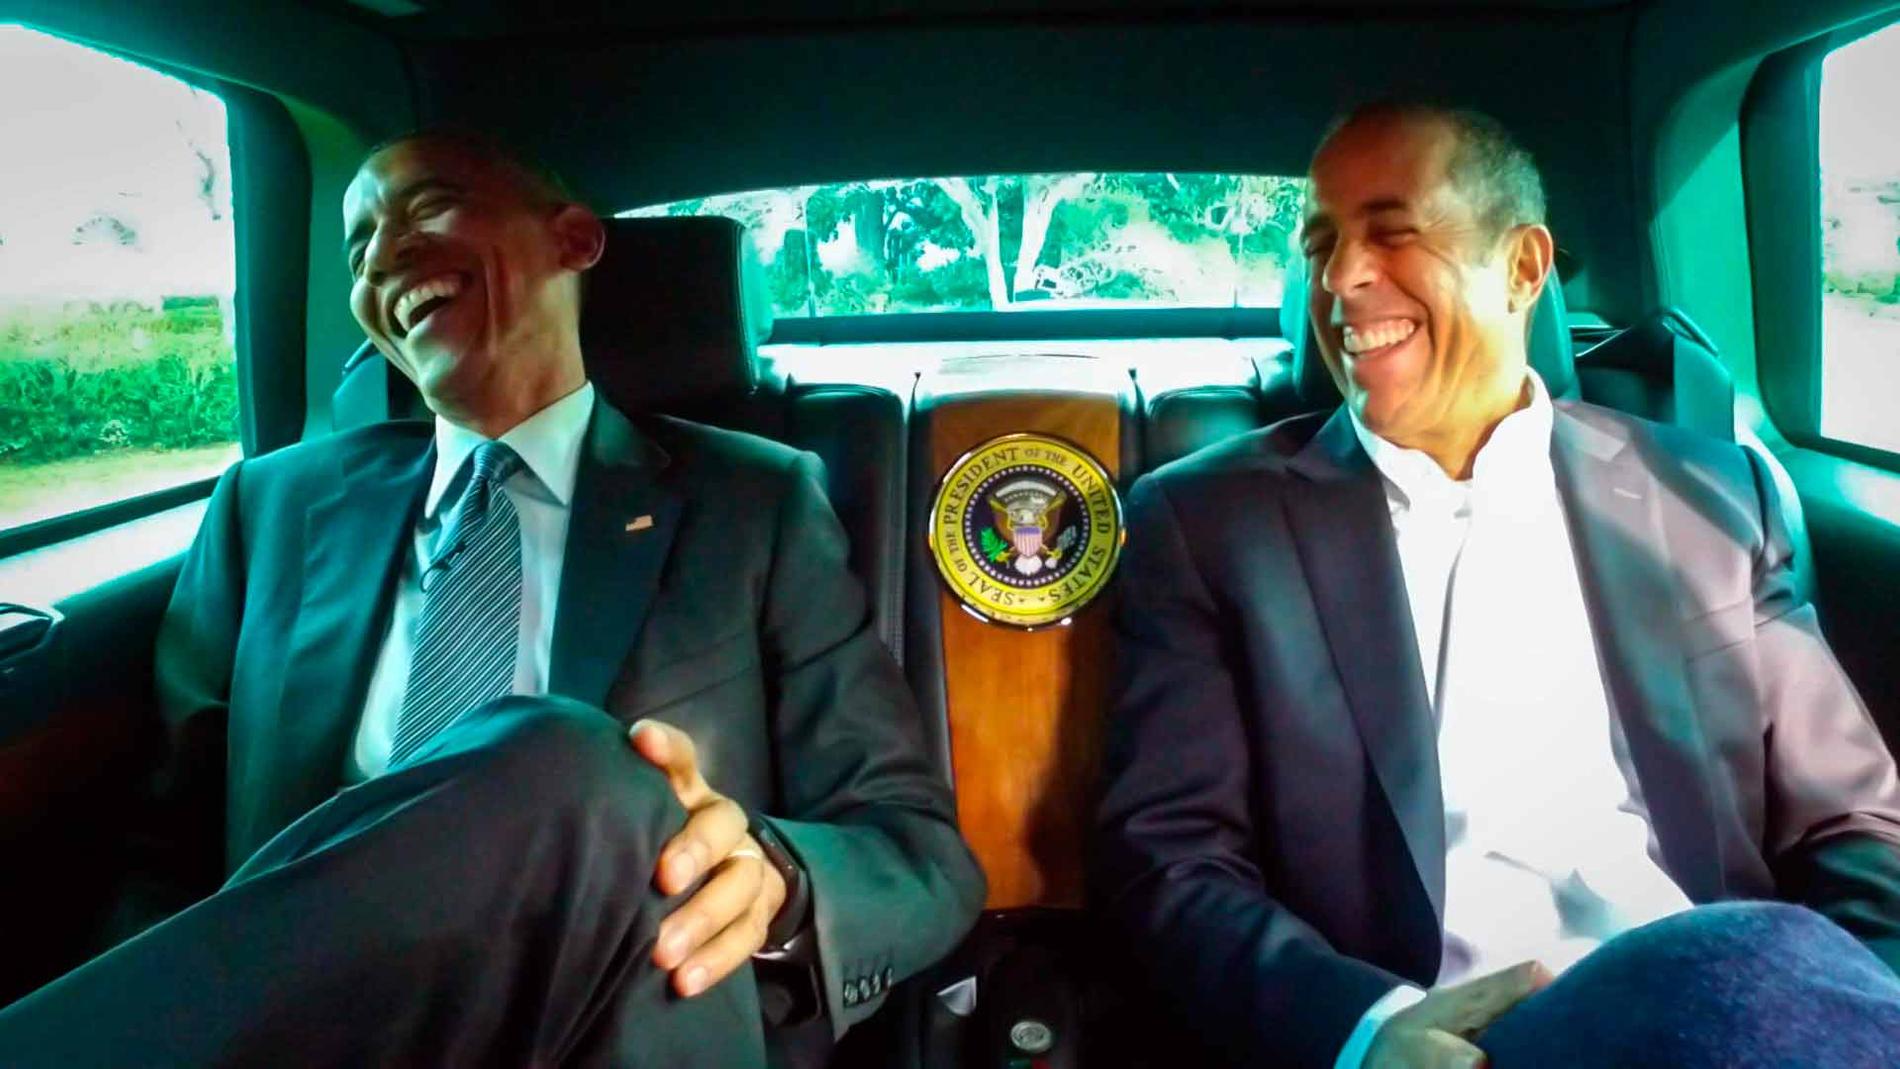 Även president Barack Obama har gästat Seinfeld i showen ”Comedians in Cars Getting Coffee”.